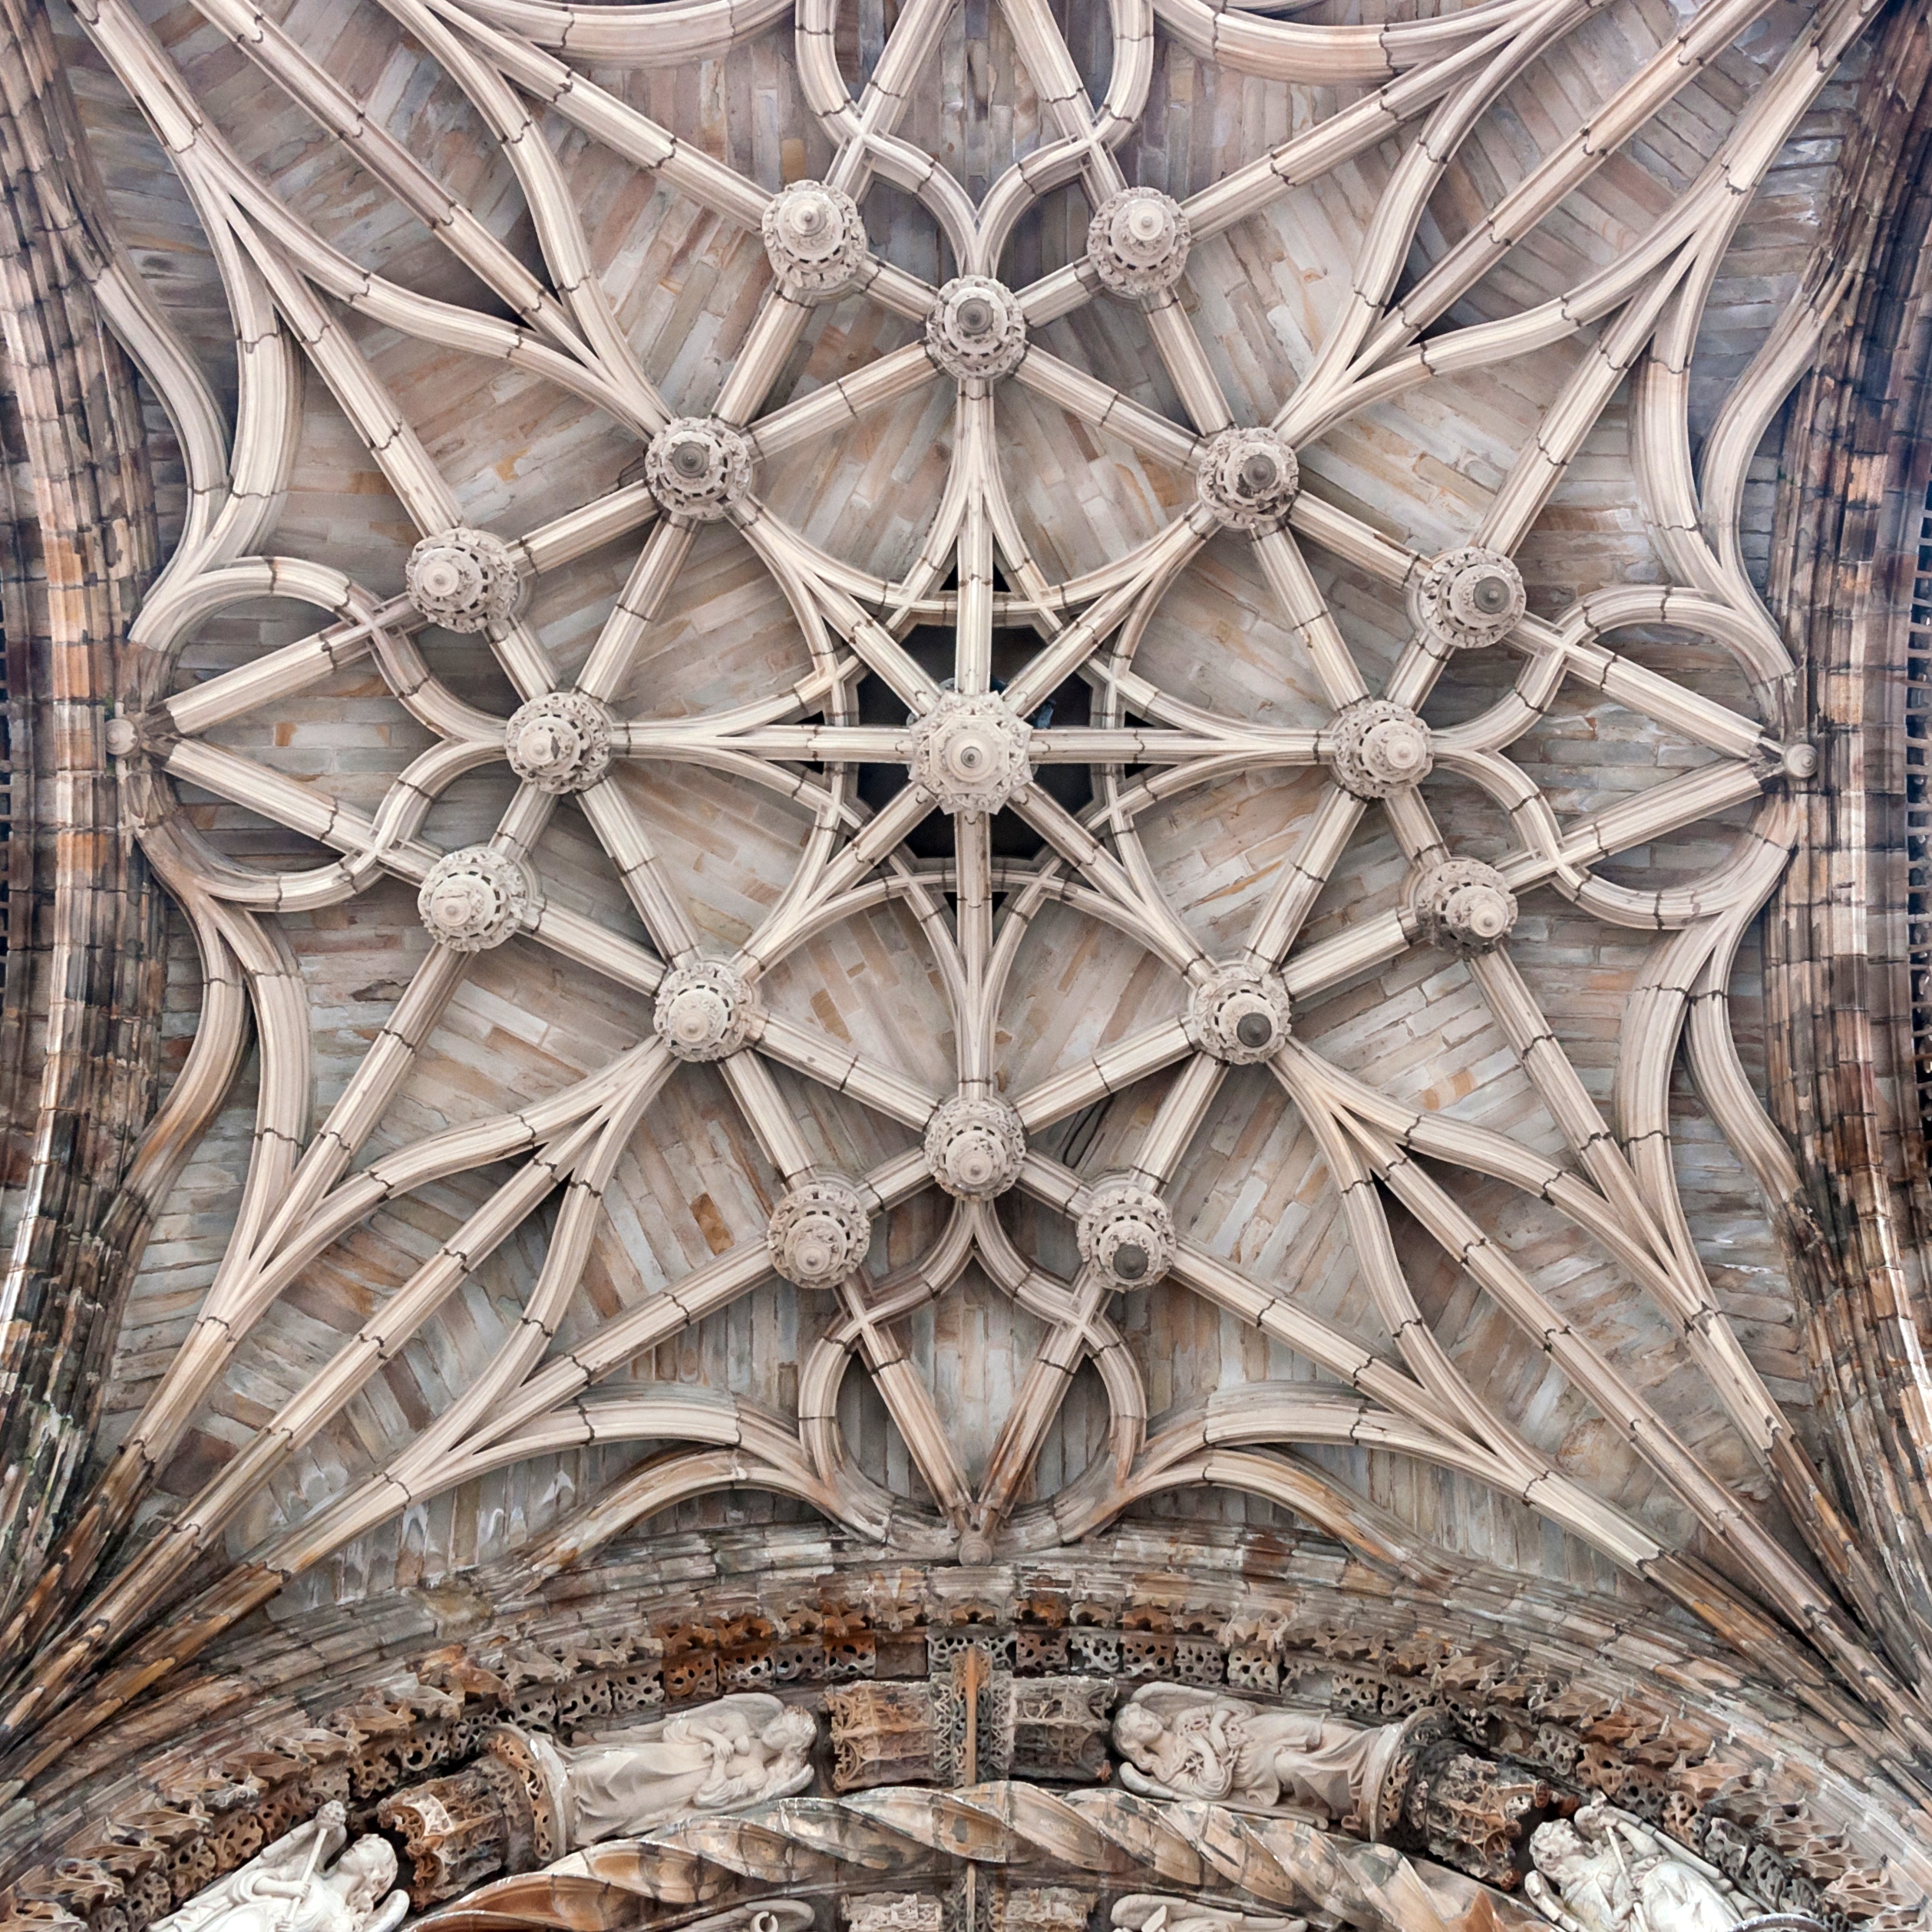 Albi cathédrale Sainte-Cécile portal vault